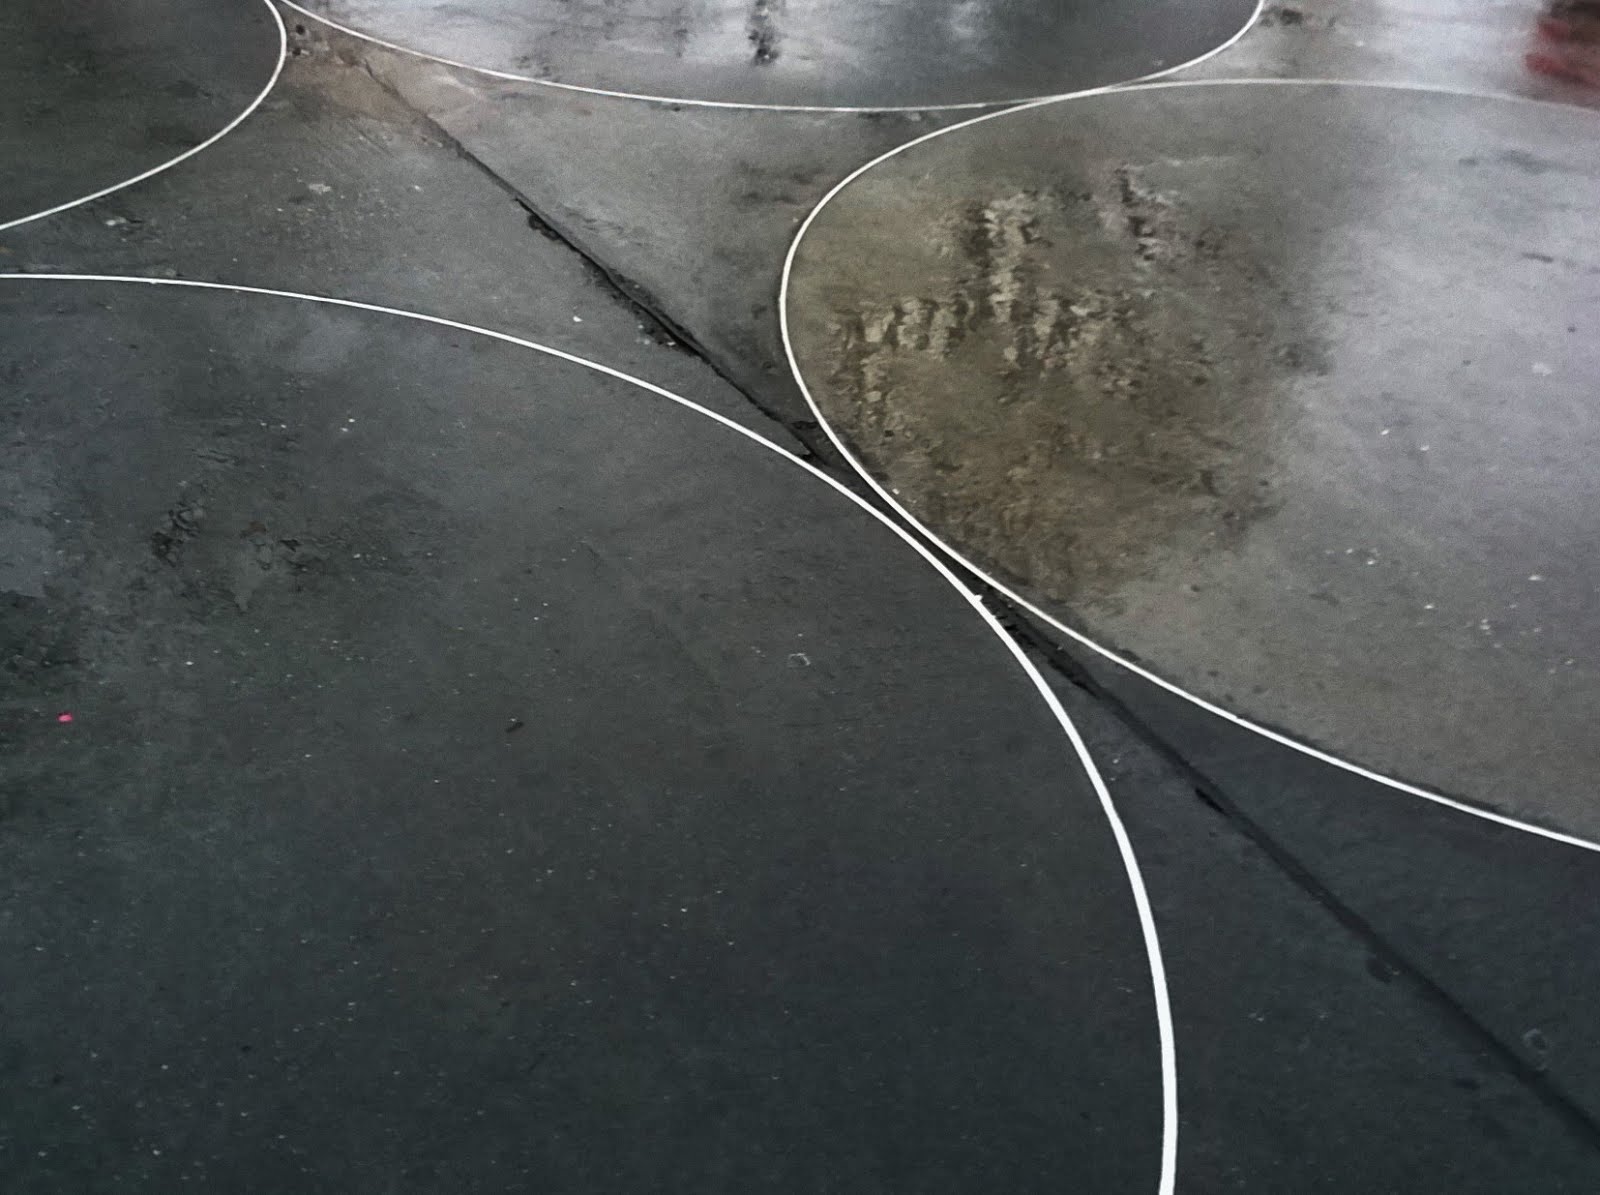 New York Guggenheim Winter Rain